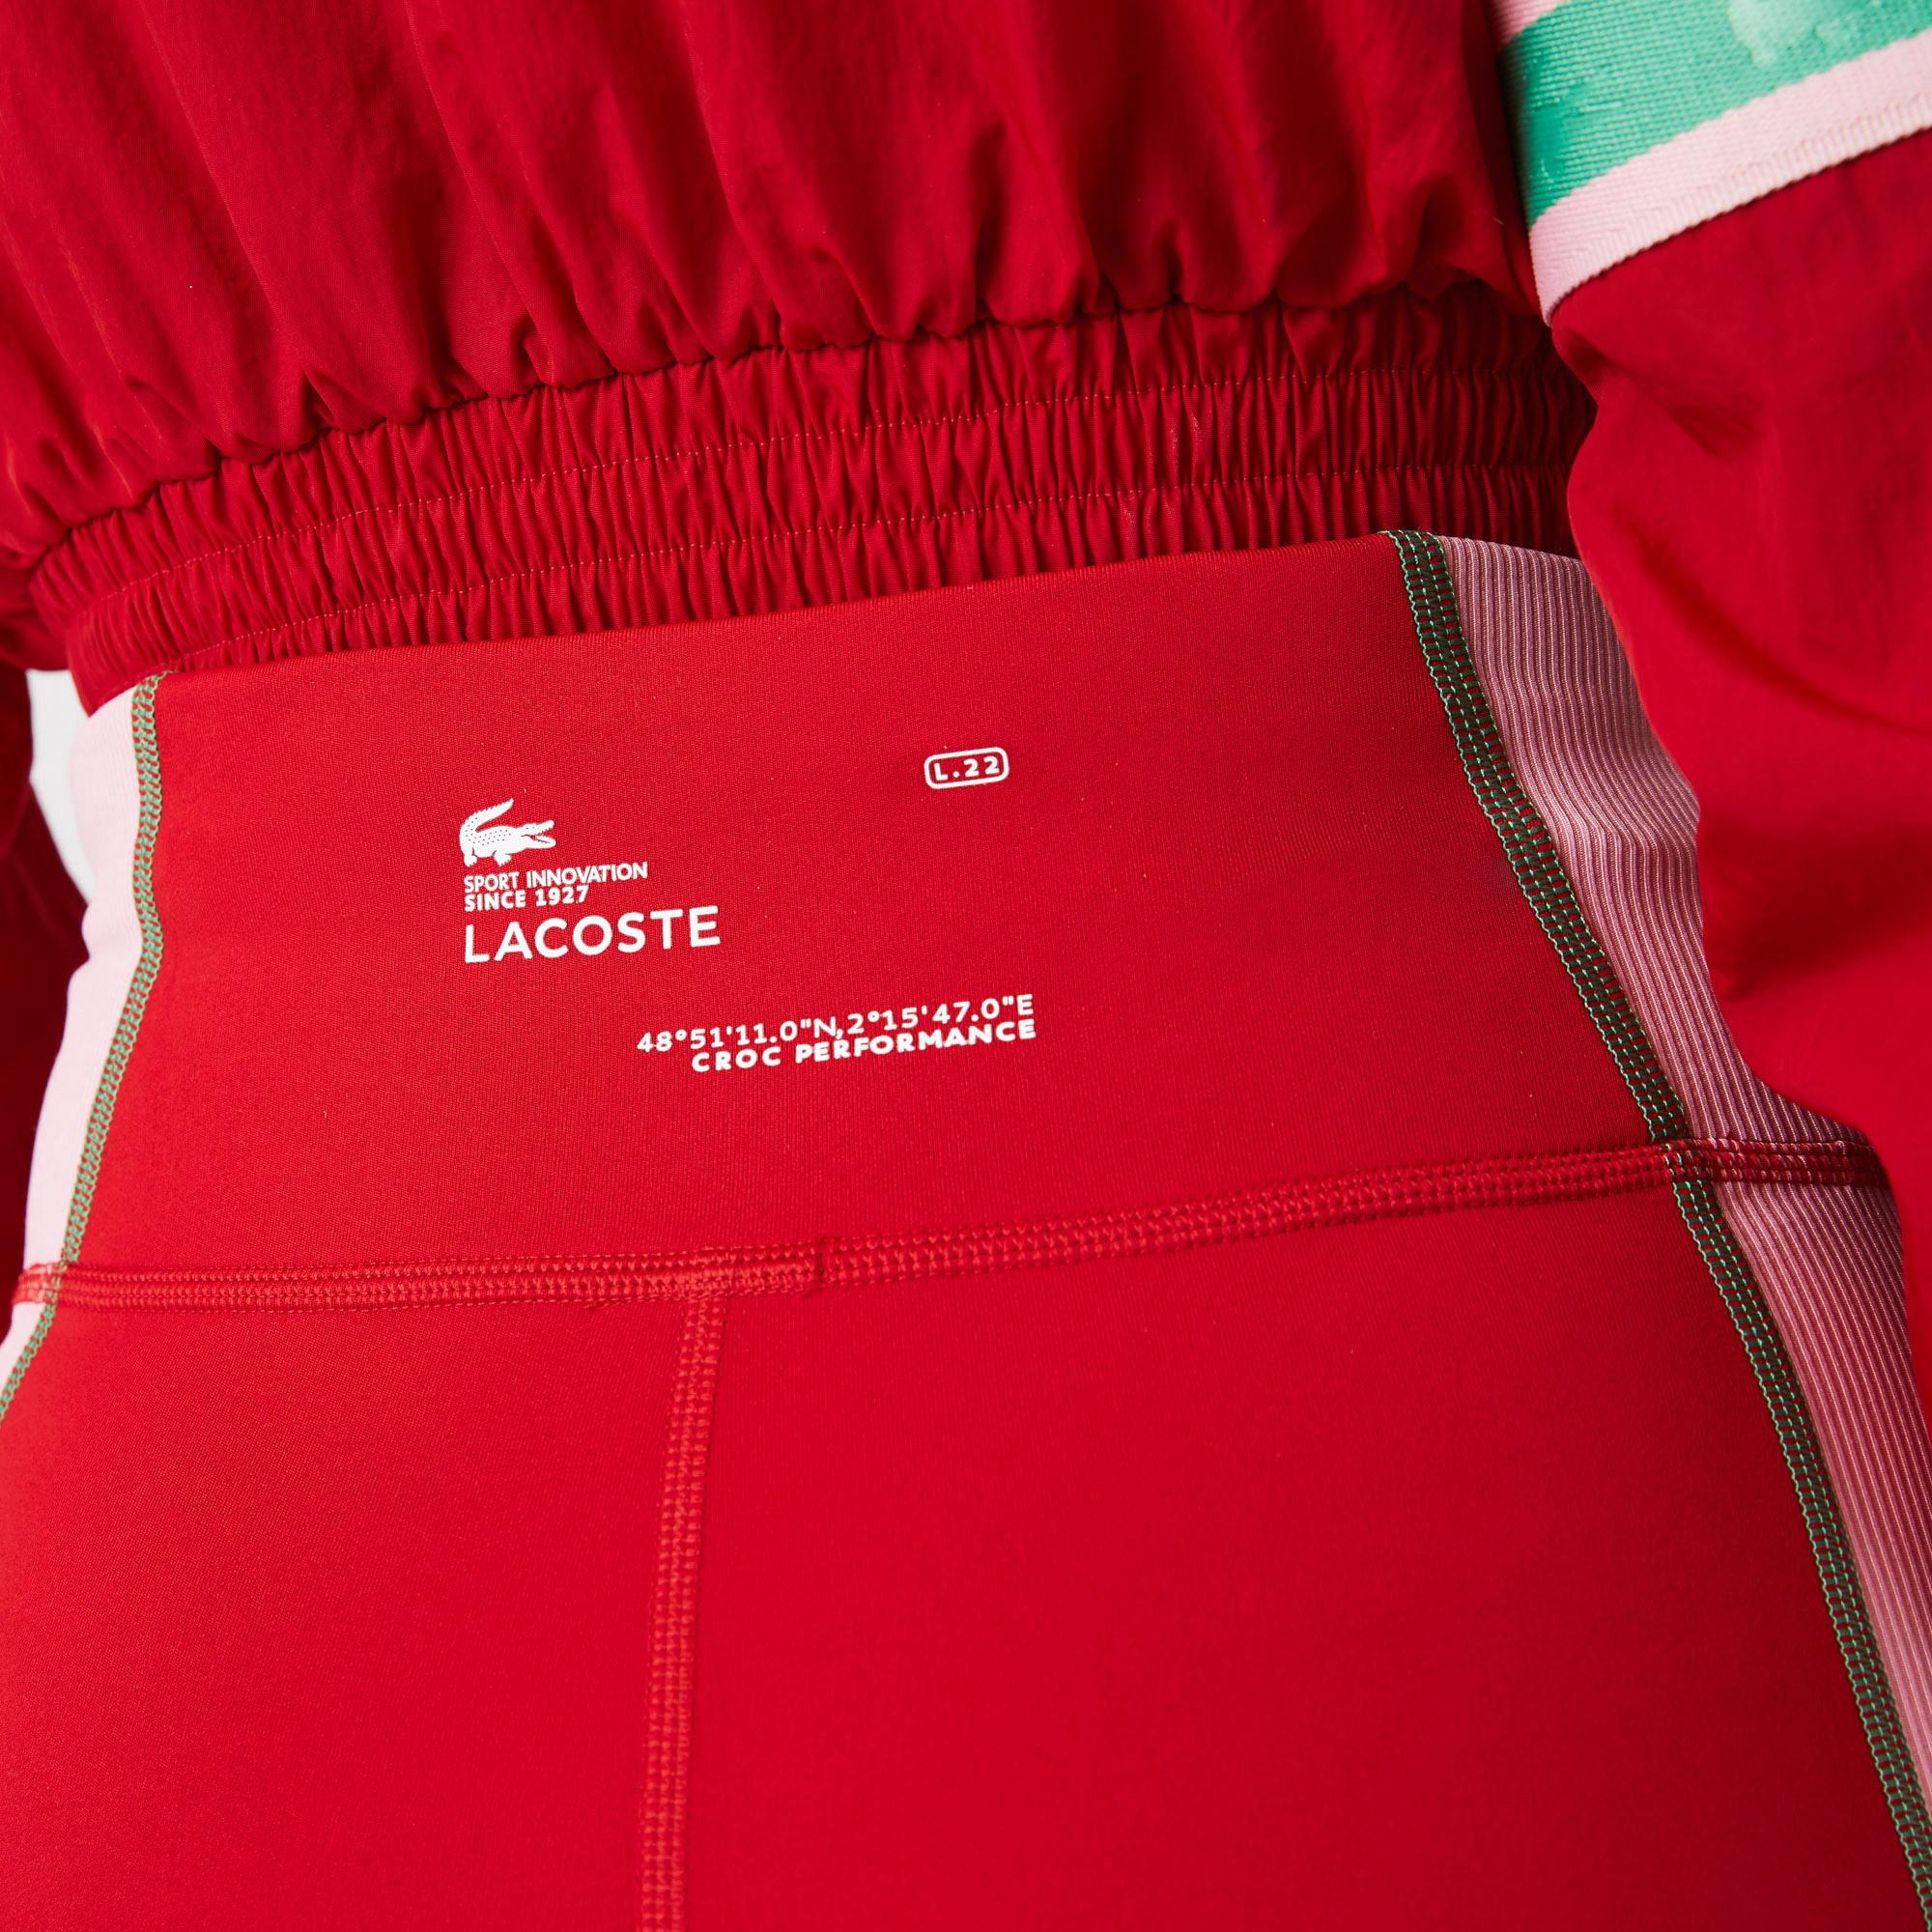 Lacoste Női SPORT színes blokkos kötött leggings nadrág. 5